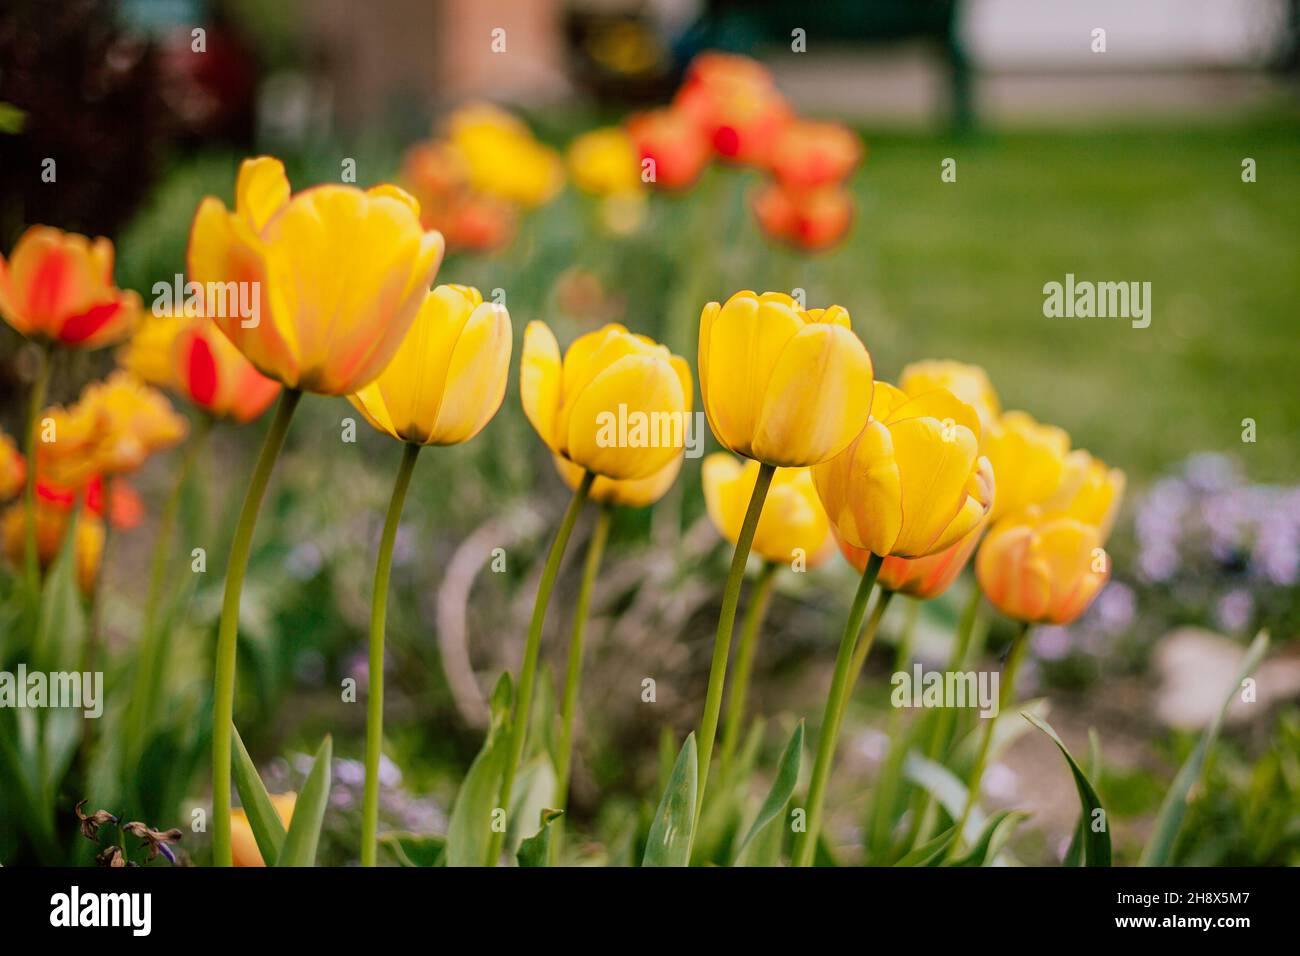 Tulips de Colurful dans le jardin Banque D'Images